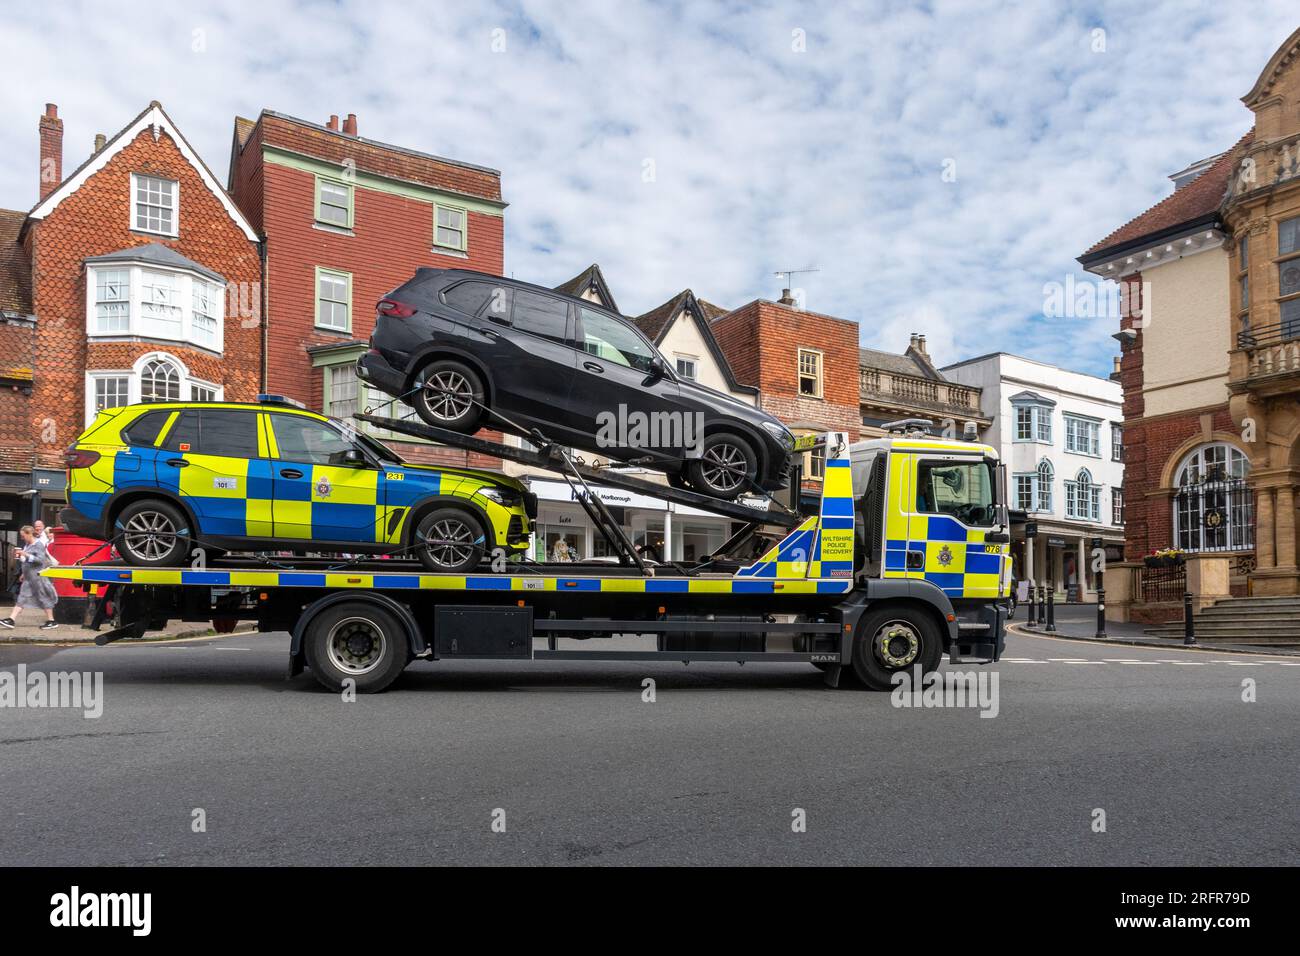 Un camion de récupération de la police circulant dans le centre-ville de Marlborough, Wiltshire, Angleterre, Royaume-Uni, transportant une voiture saisie Banque D'Images